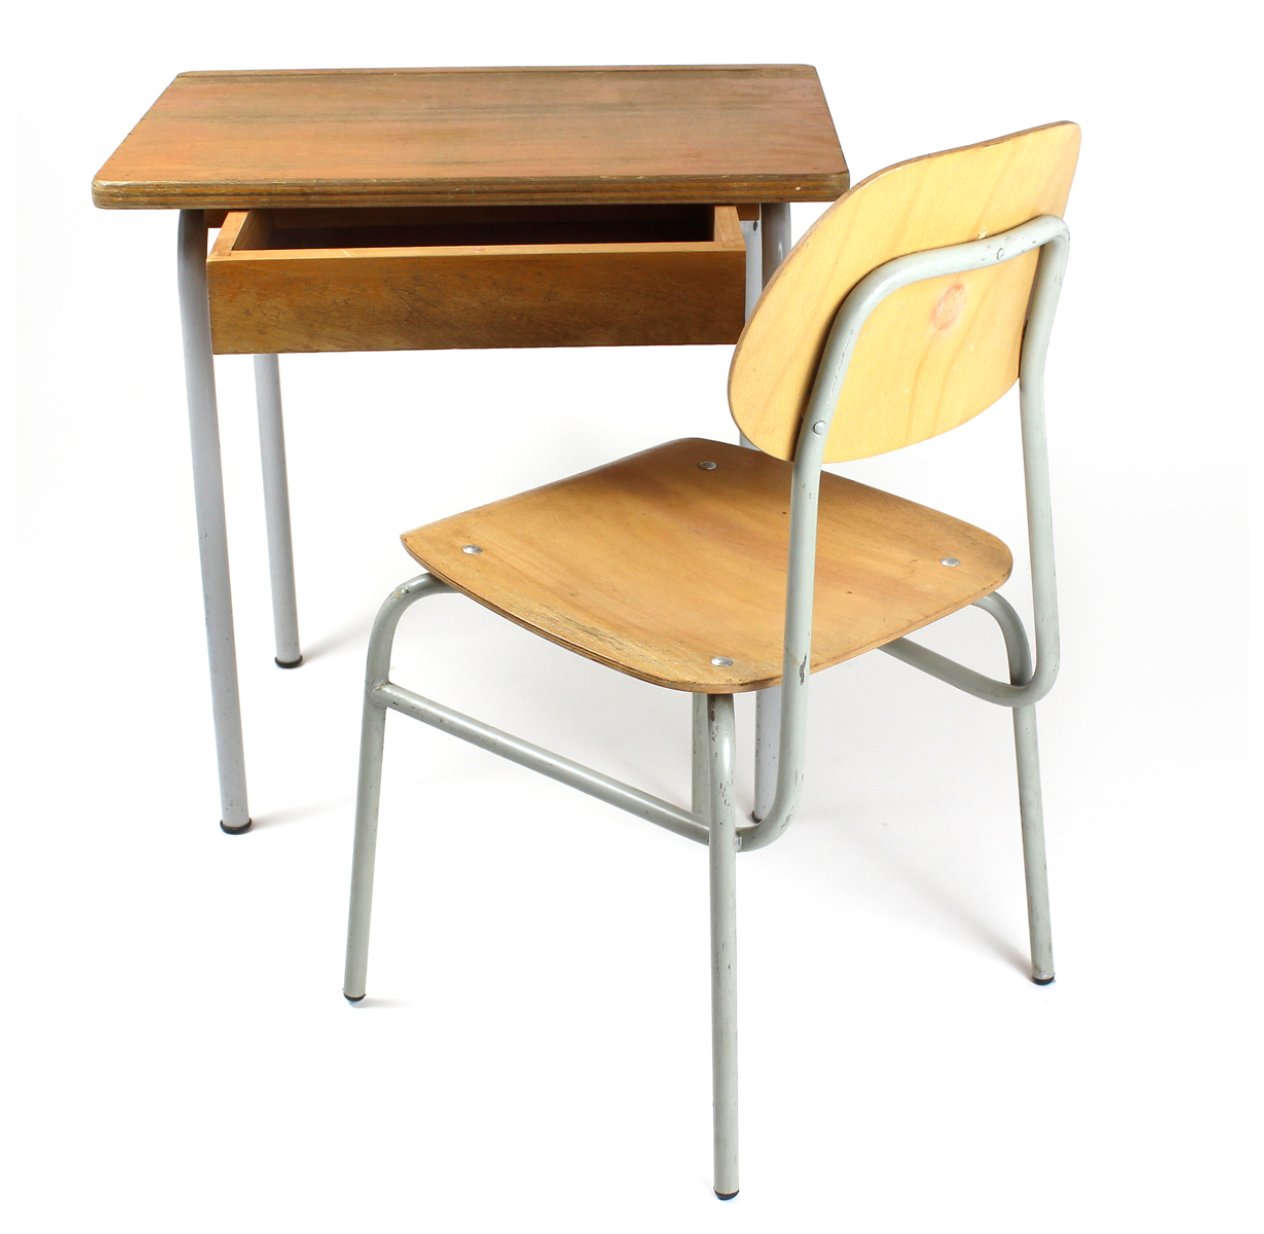 Petit bureau et chaise enfant des année 50-60. — Lamp and co